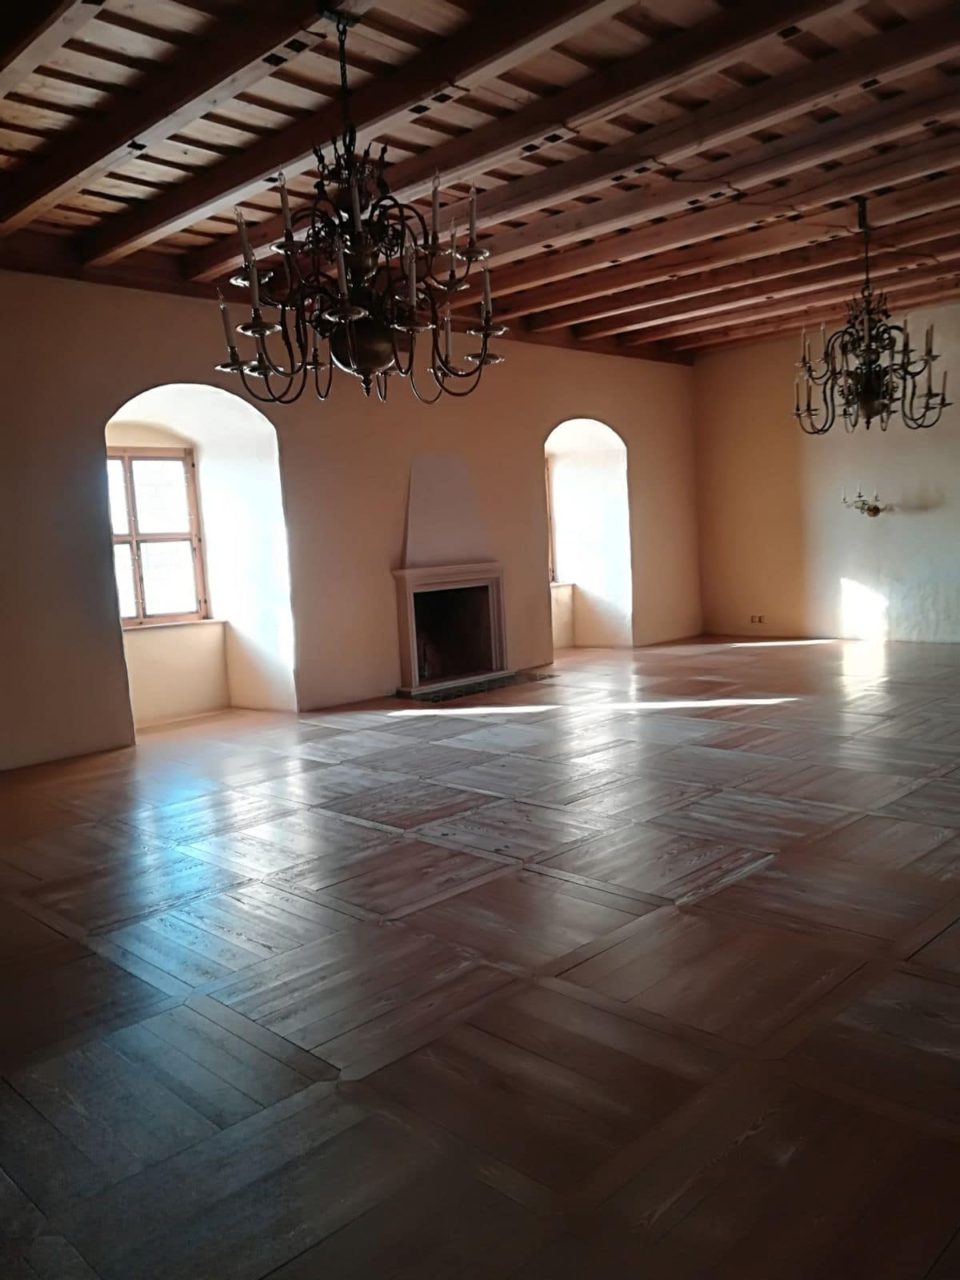 Restoration of the wooden floor in the Bauska Castle Museum